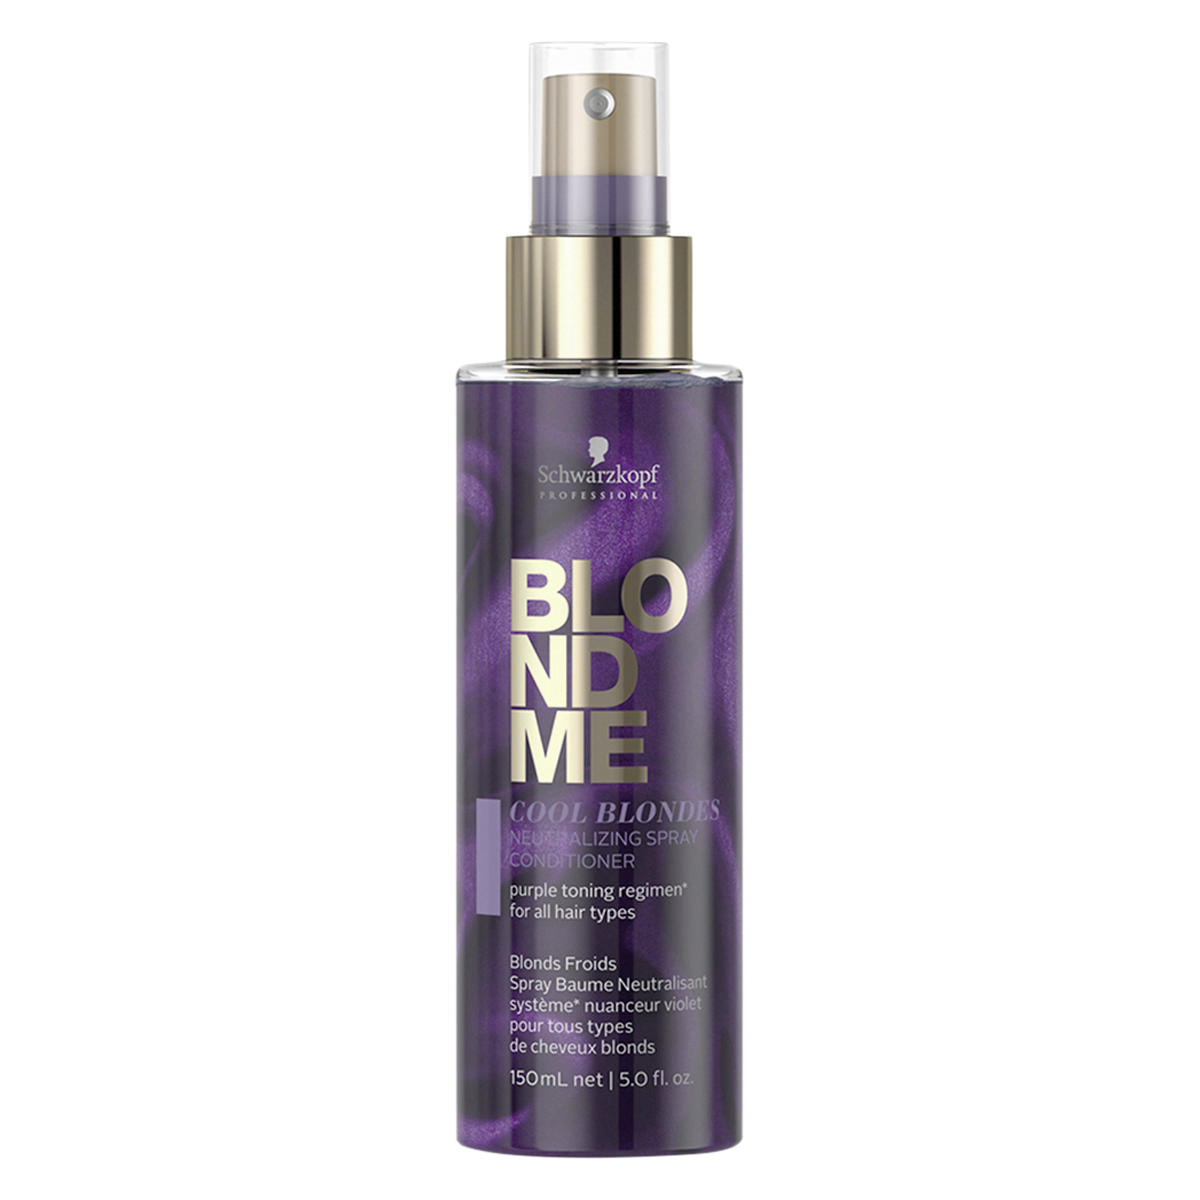 Schwarzkopf Professional BlondMe Cool Blondes Neutralizing Spray Conditioner 150 ml - 1